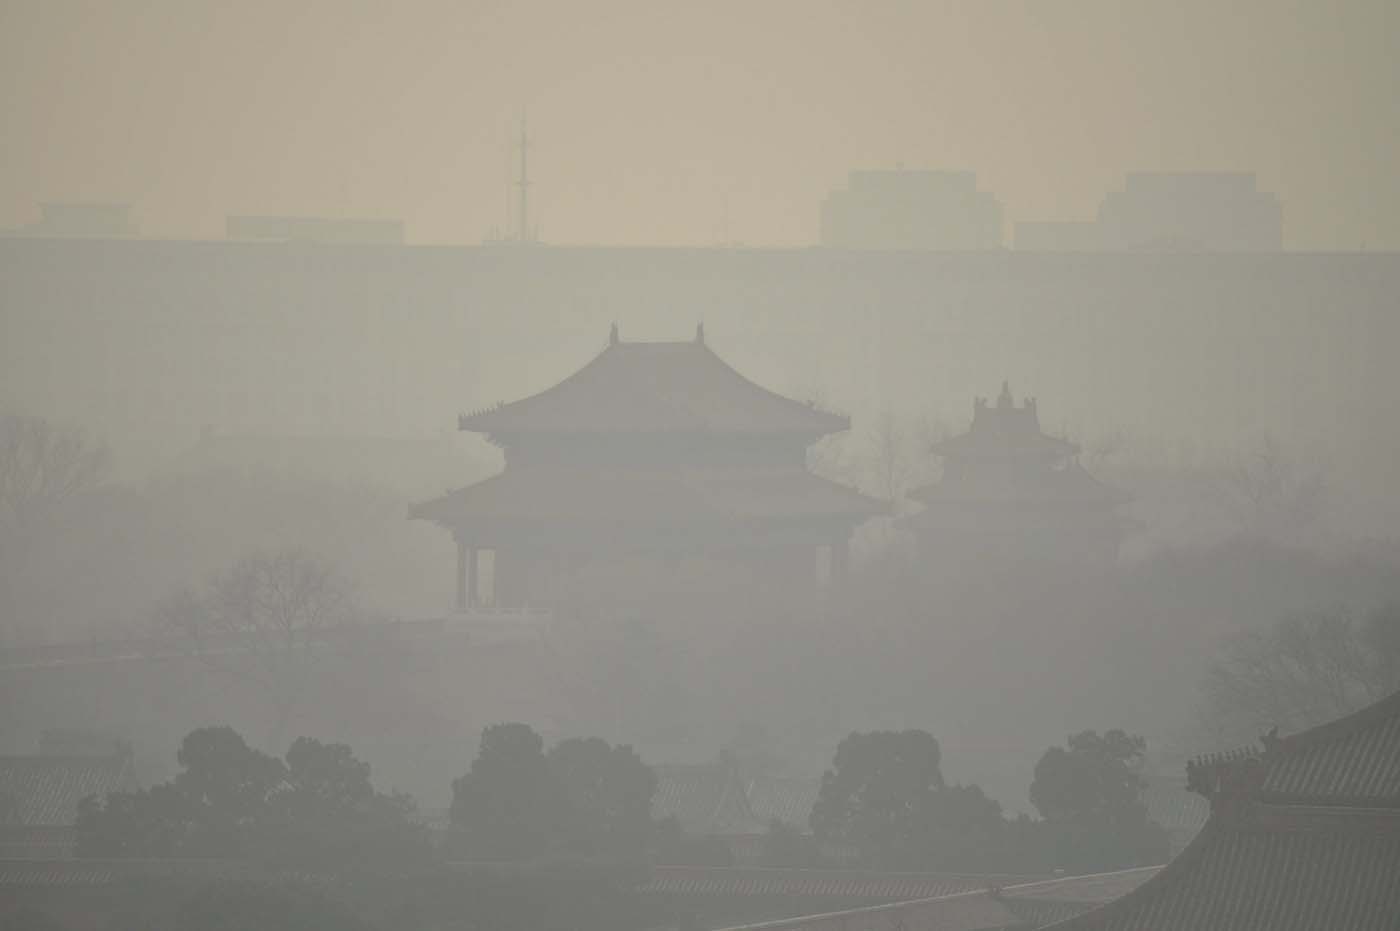 Alerta roja por espesa niebla contaminante en Pekín (fotos)